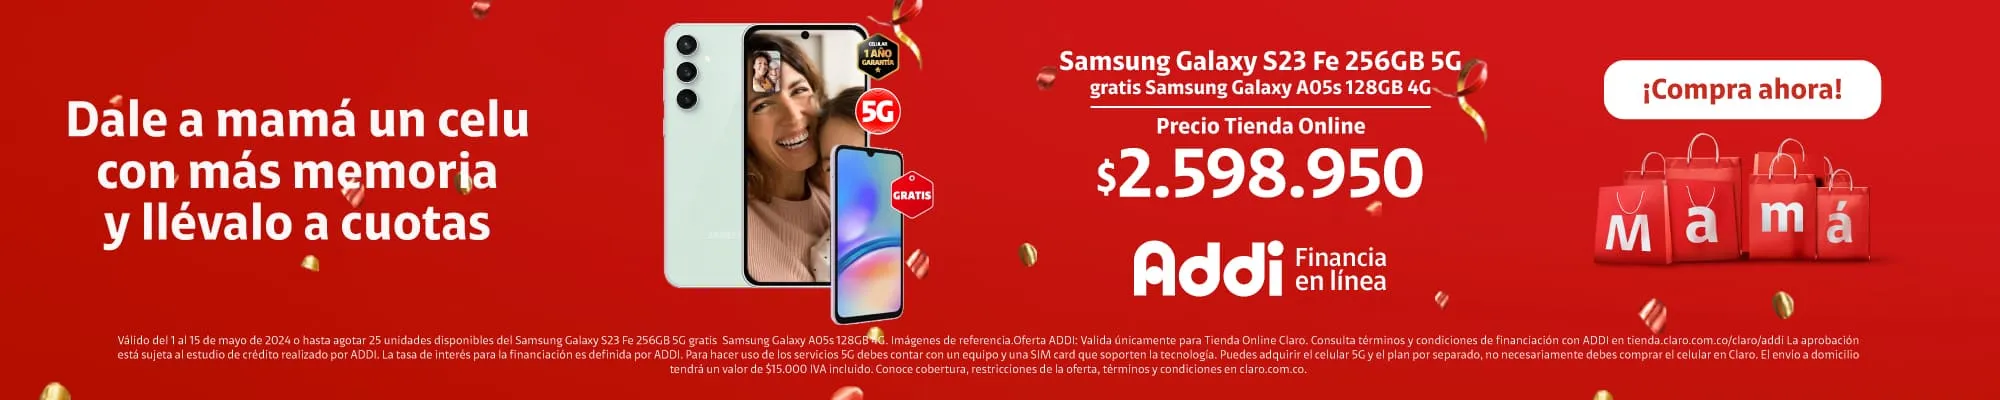 Samsung Galaxy S23 FE 256GB 5G